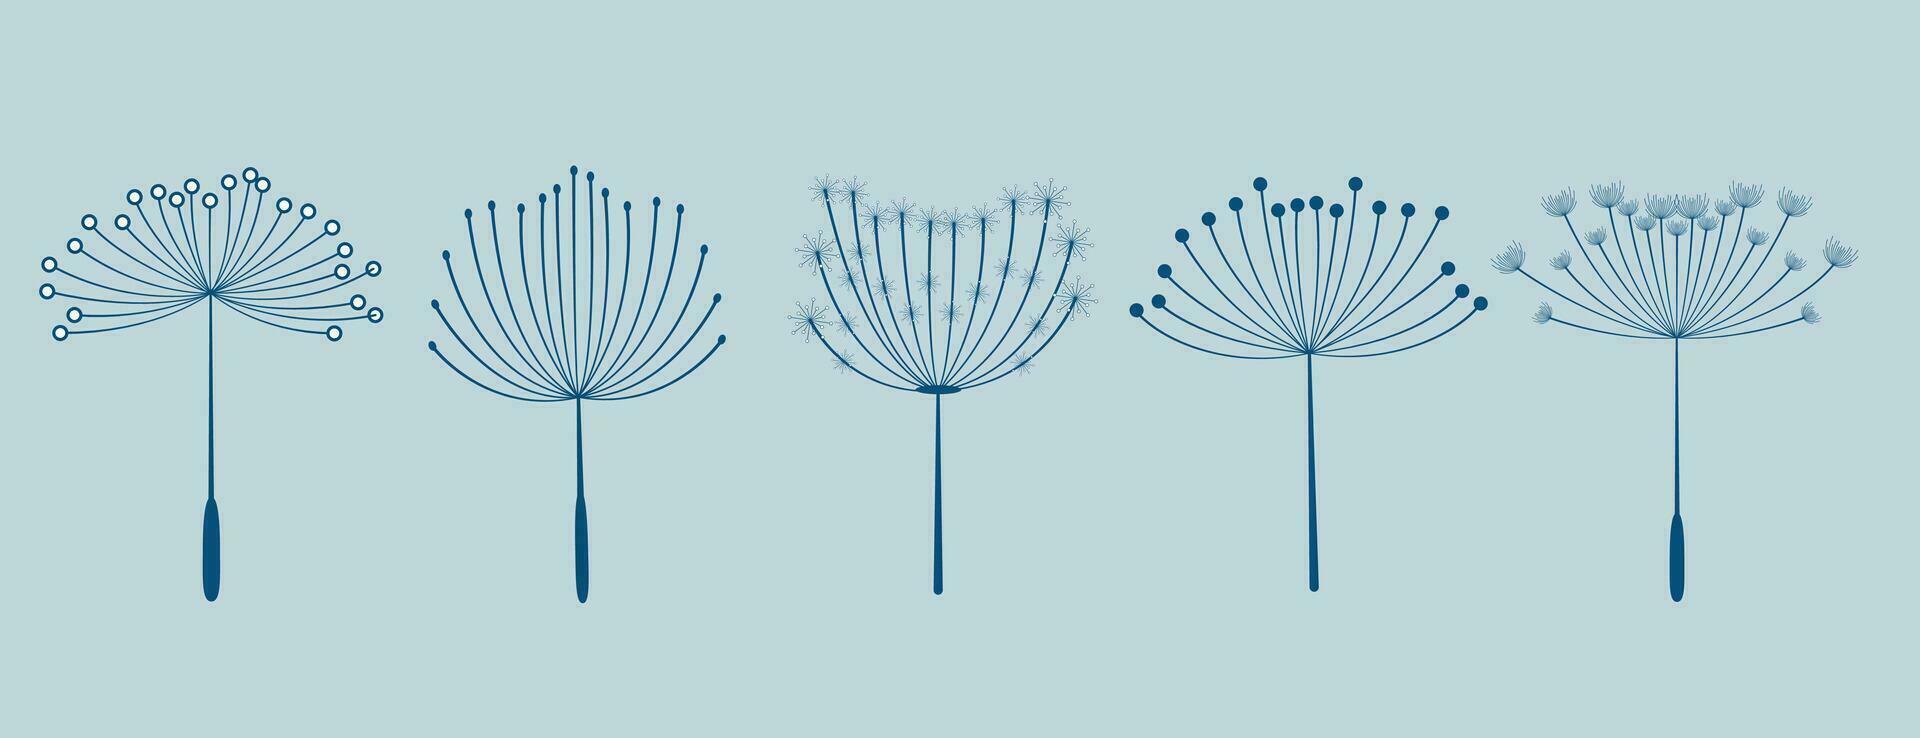 set of five dandelion flowers seeds vector